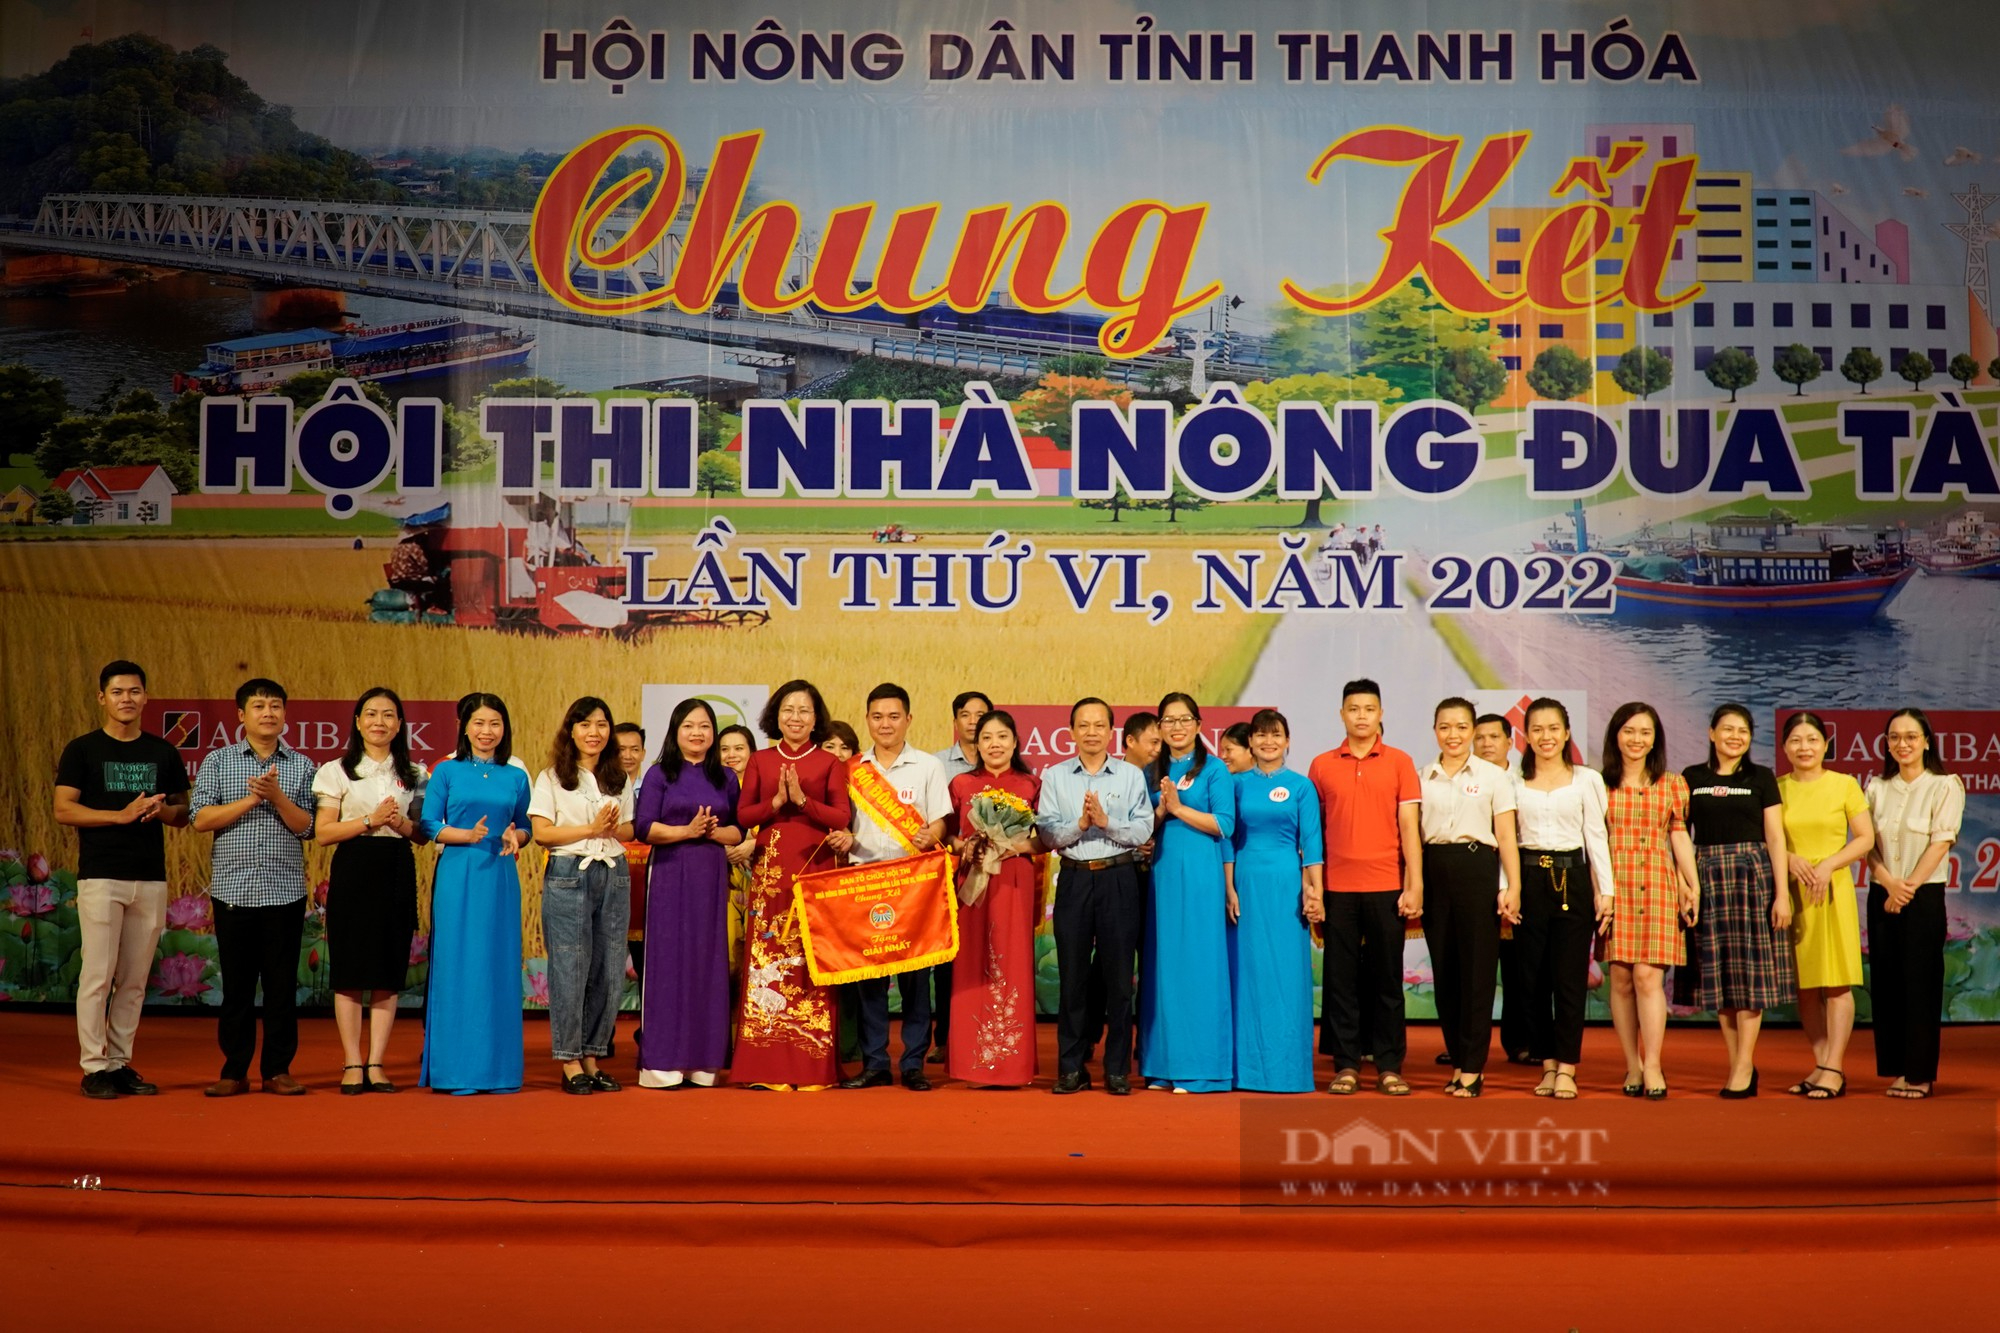 Chung kết Hội thi Nhà nông đua tài tỉnh Thanh Hóa năm 2022, Hội Nông dân huyện Đông Sơn đạt giải Nhất - Ảnh 8.